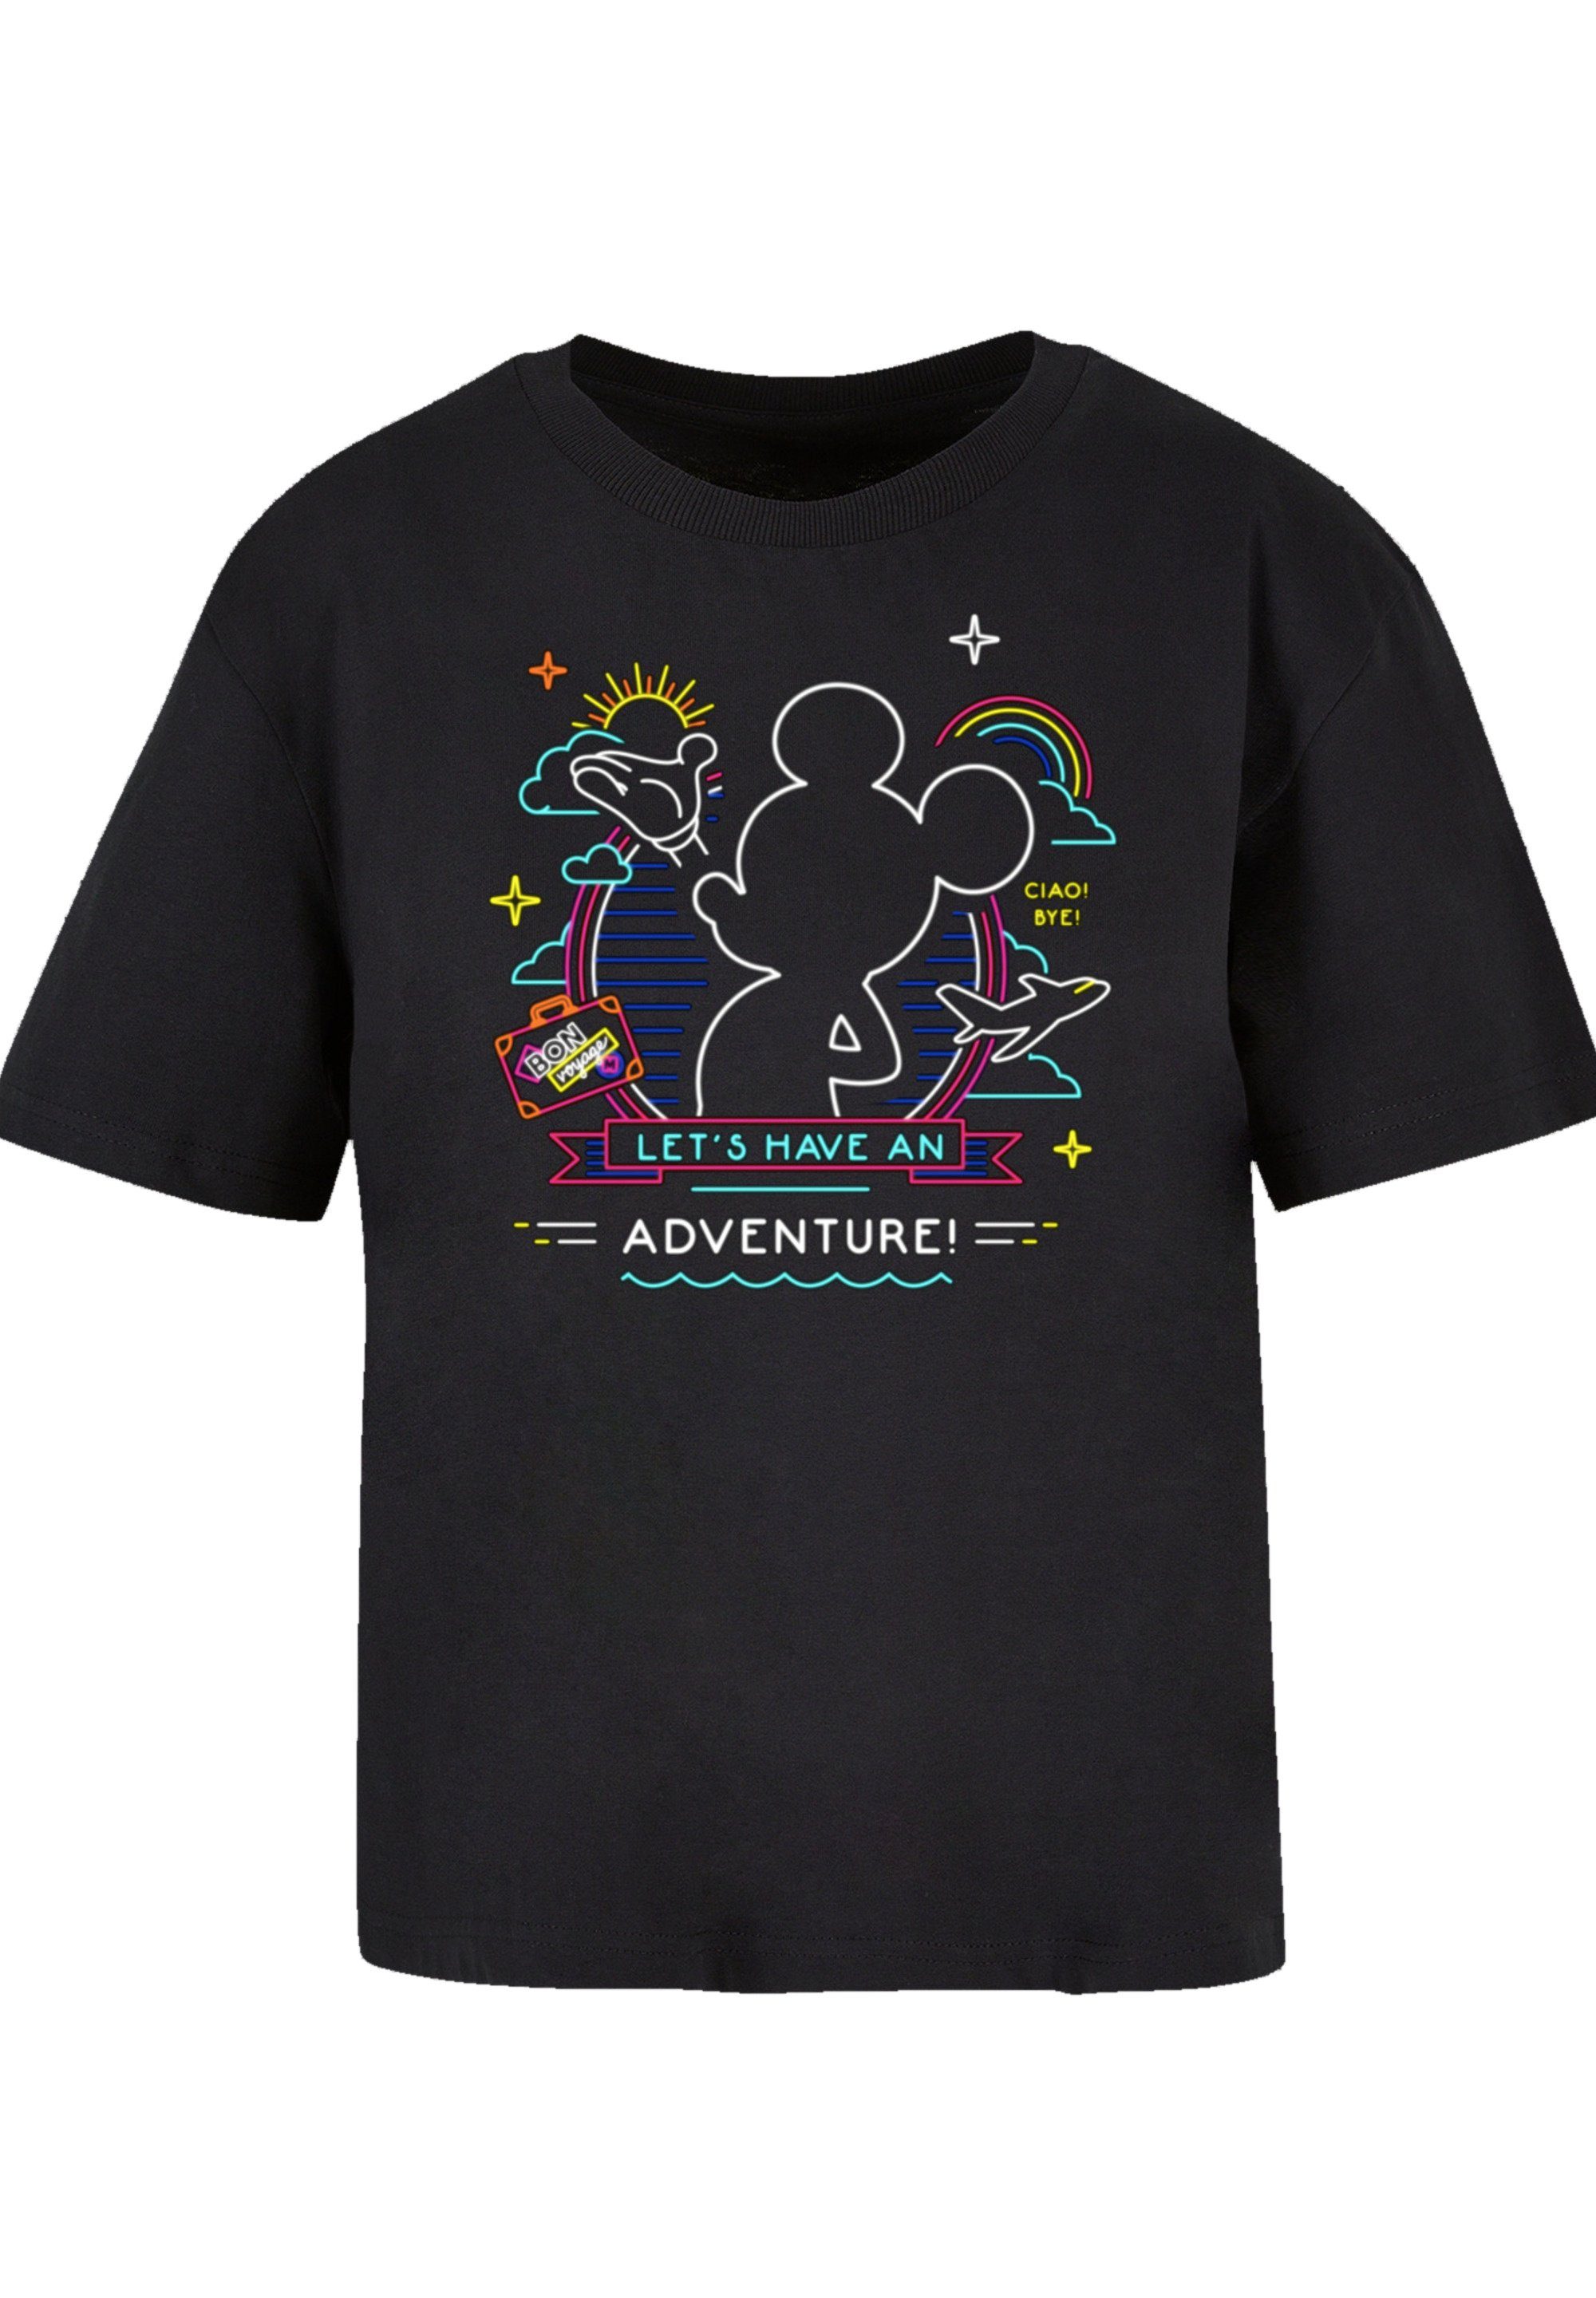 F4NT4STIC T-Shirt Disney Micky Maus Neon Adventure Premium Qualität,  Komfortabel und vielseitig kombinierbar